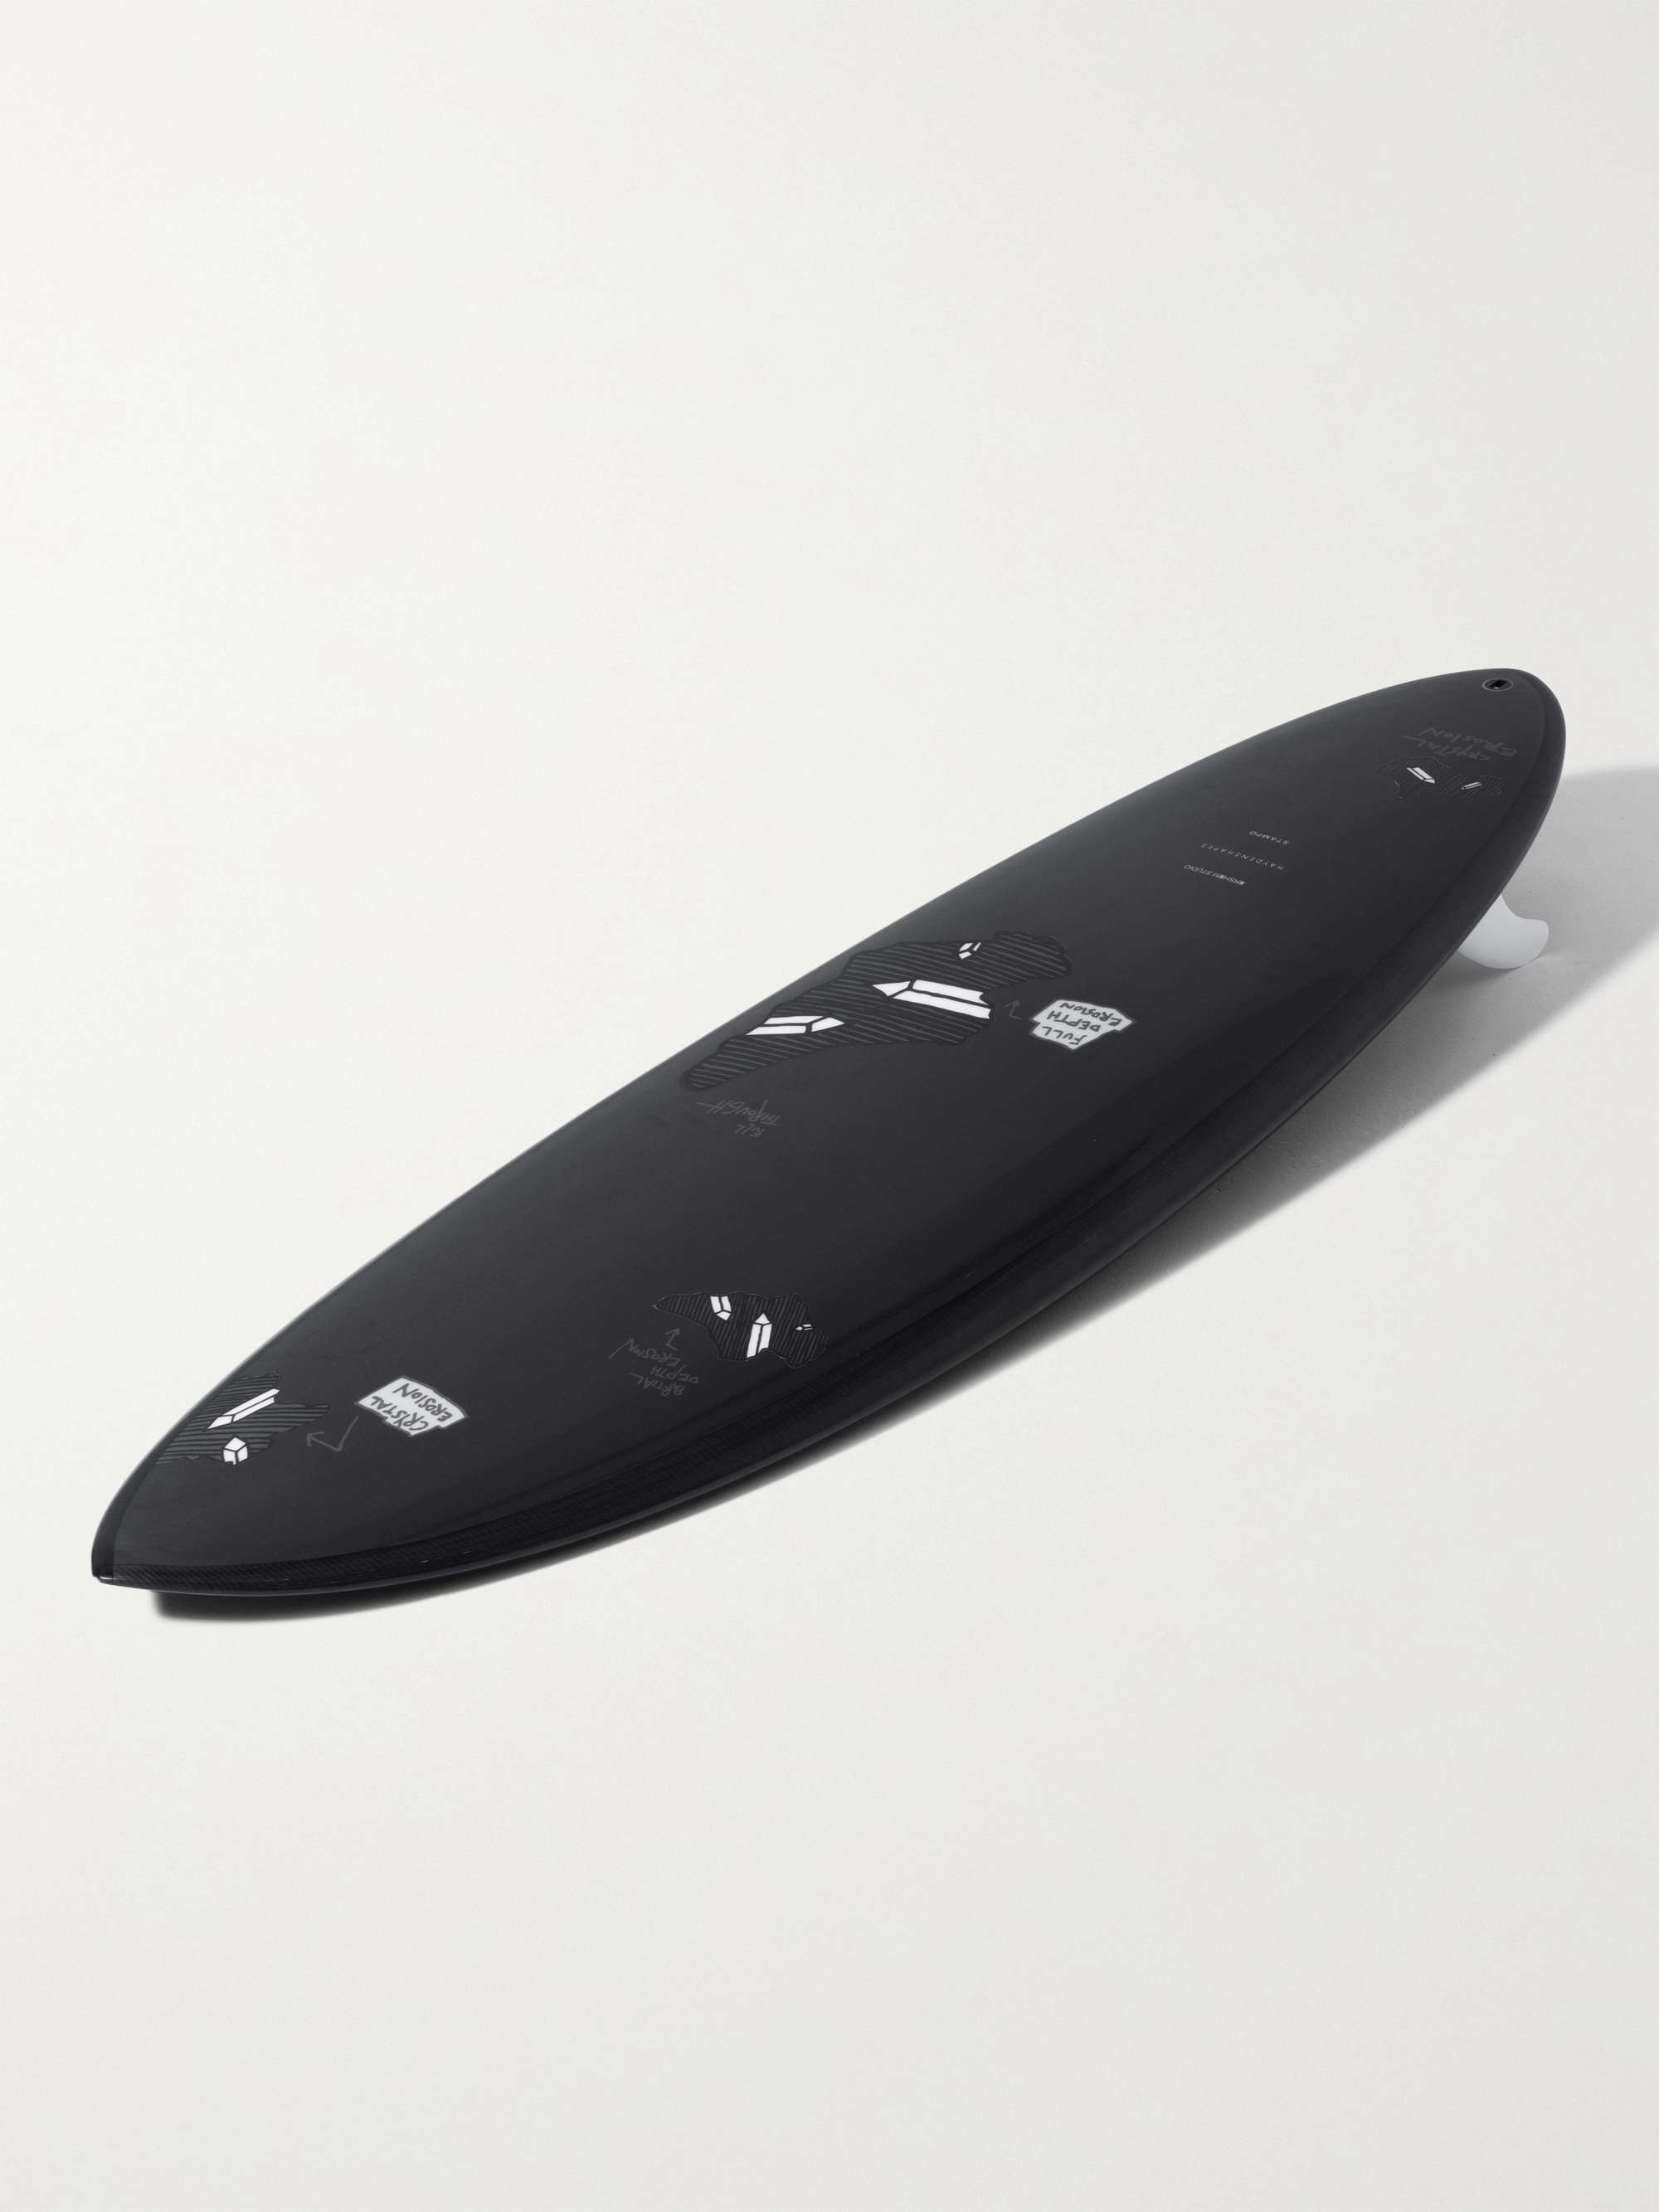 HAYDENSHAPES + Arsham + Stampd Sketch Erosion Foam, Resin and Carbon Fibre Surfboard